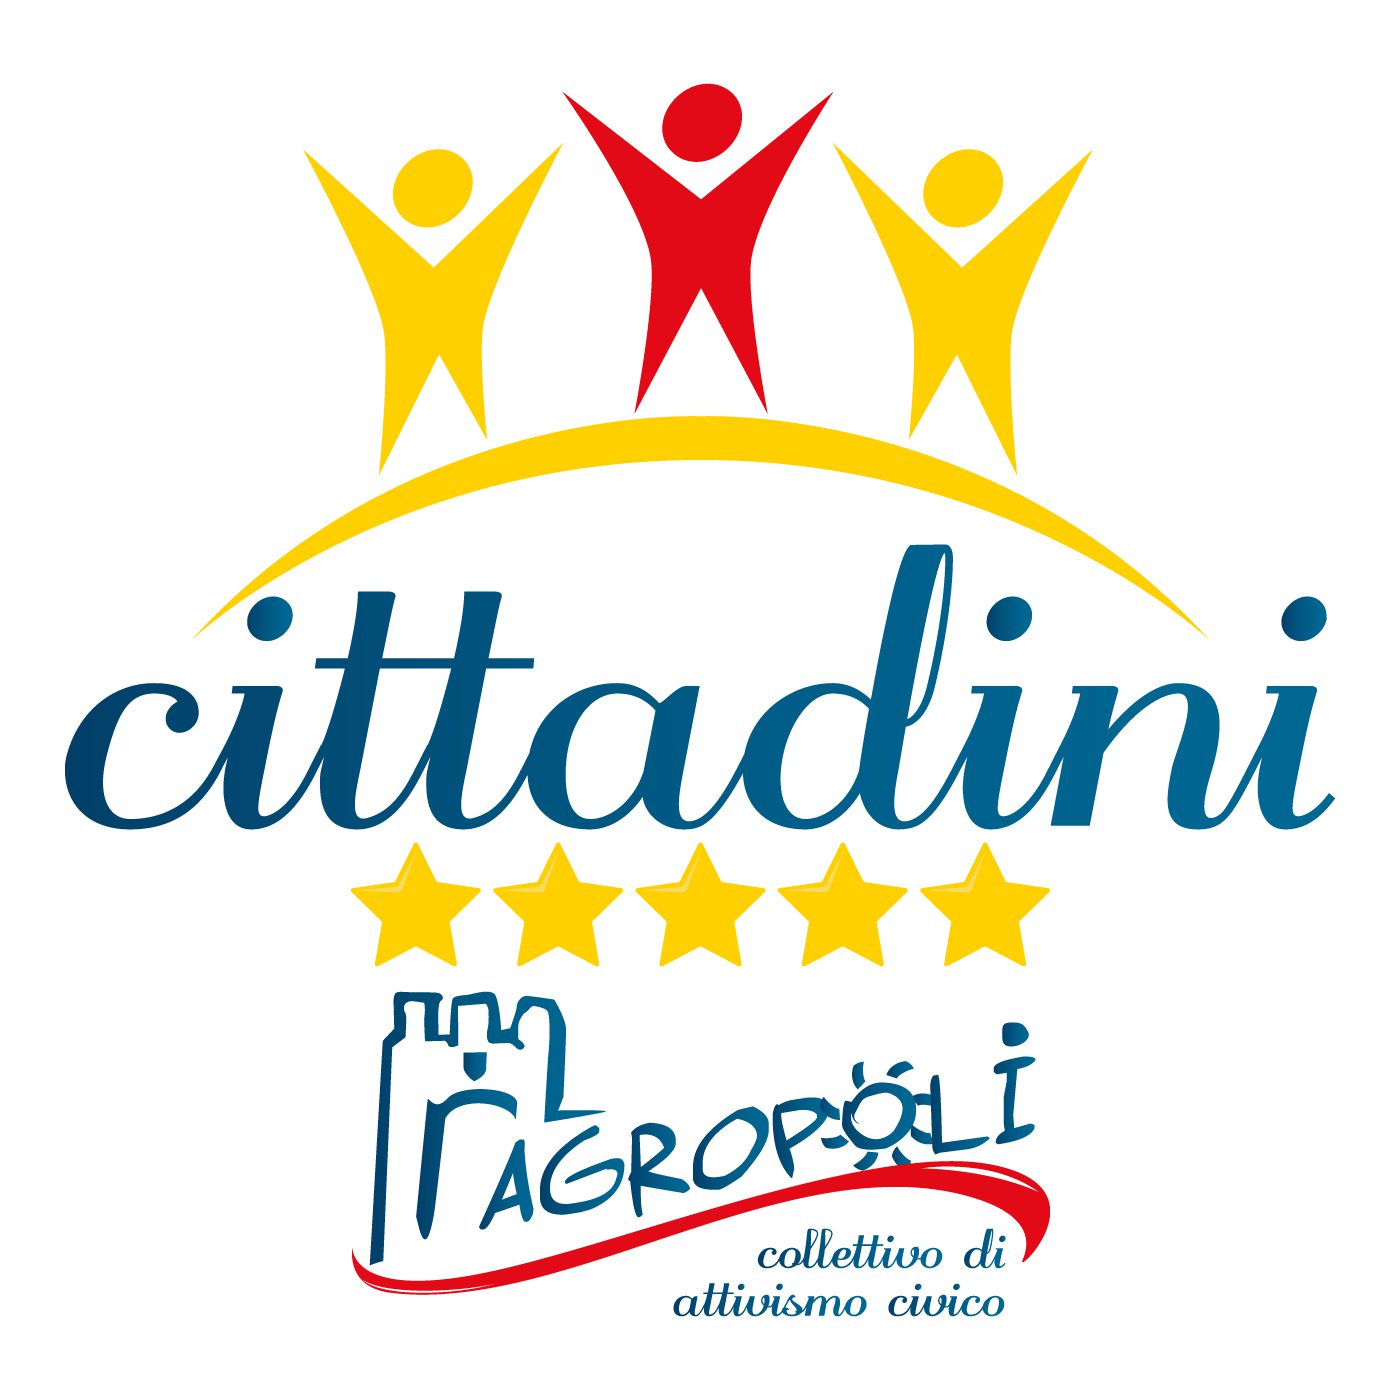 Agropoli, nuovo team coordinatori per gruppo ‘Cittadini 5 Stelle’